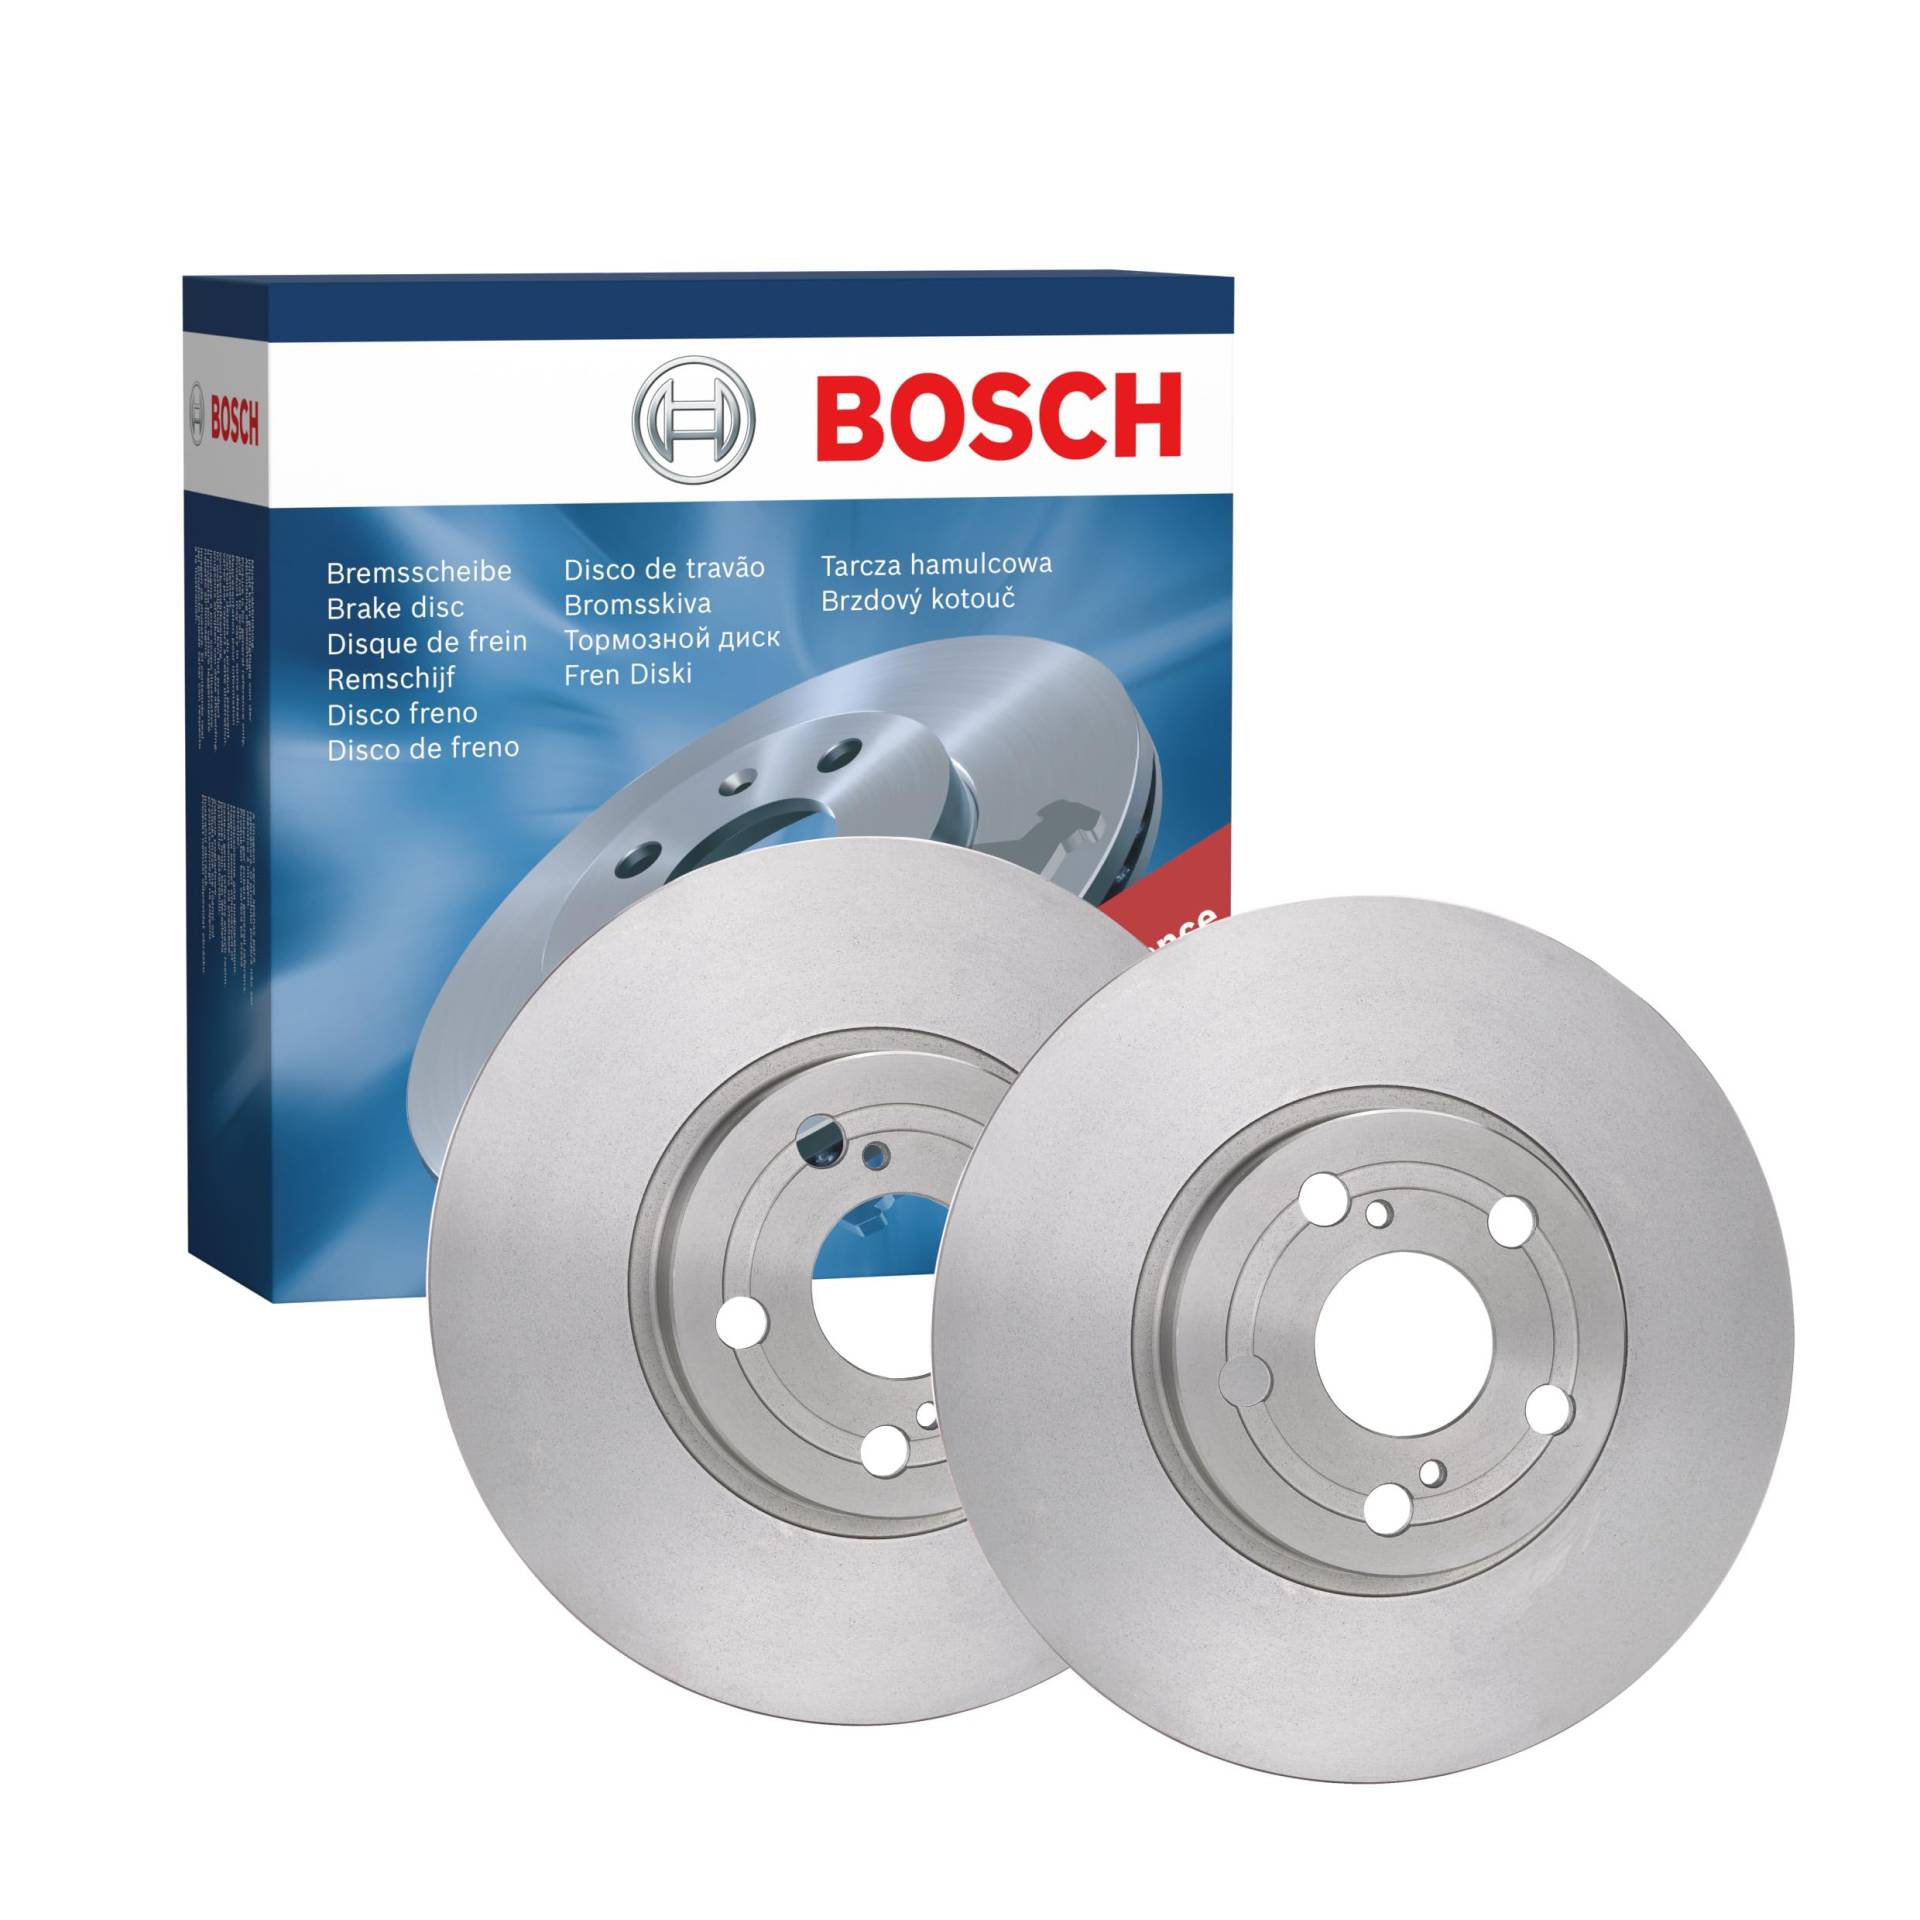 Bosch BD1191 Bremsscheiben - Vorderachse - ECE-R90 Zertifizierung - zwei Bremsscheiben pro Set von Bosch Automotive